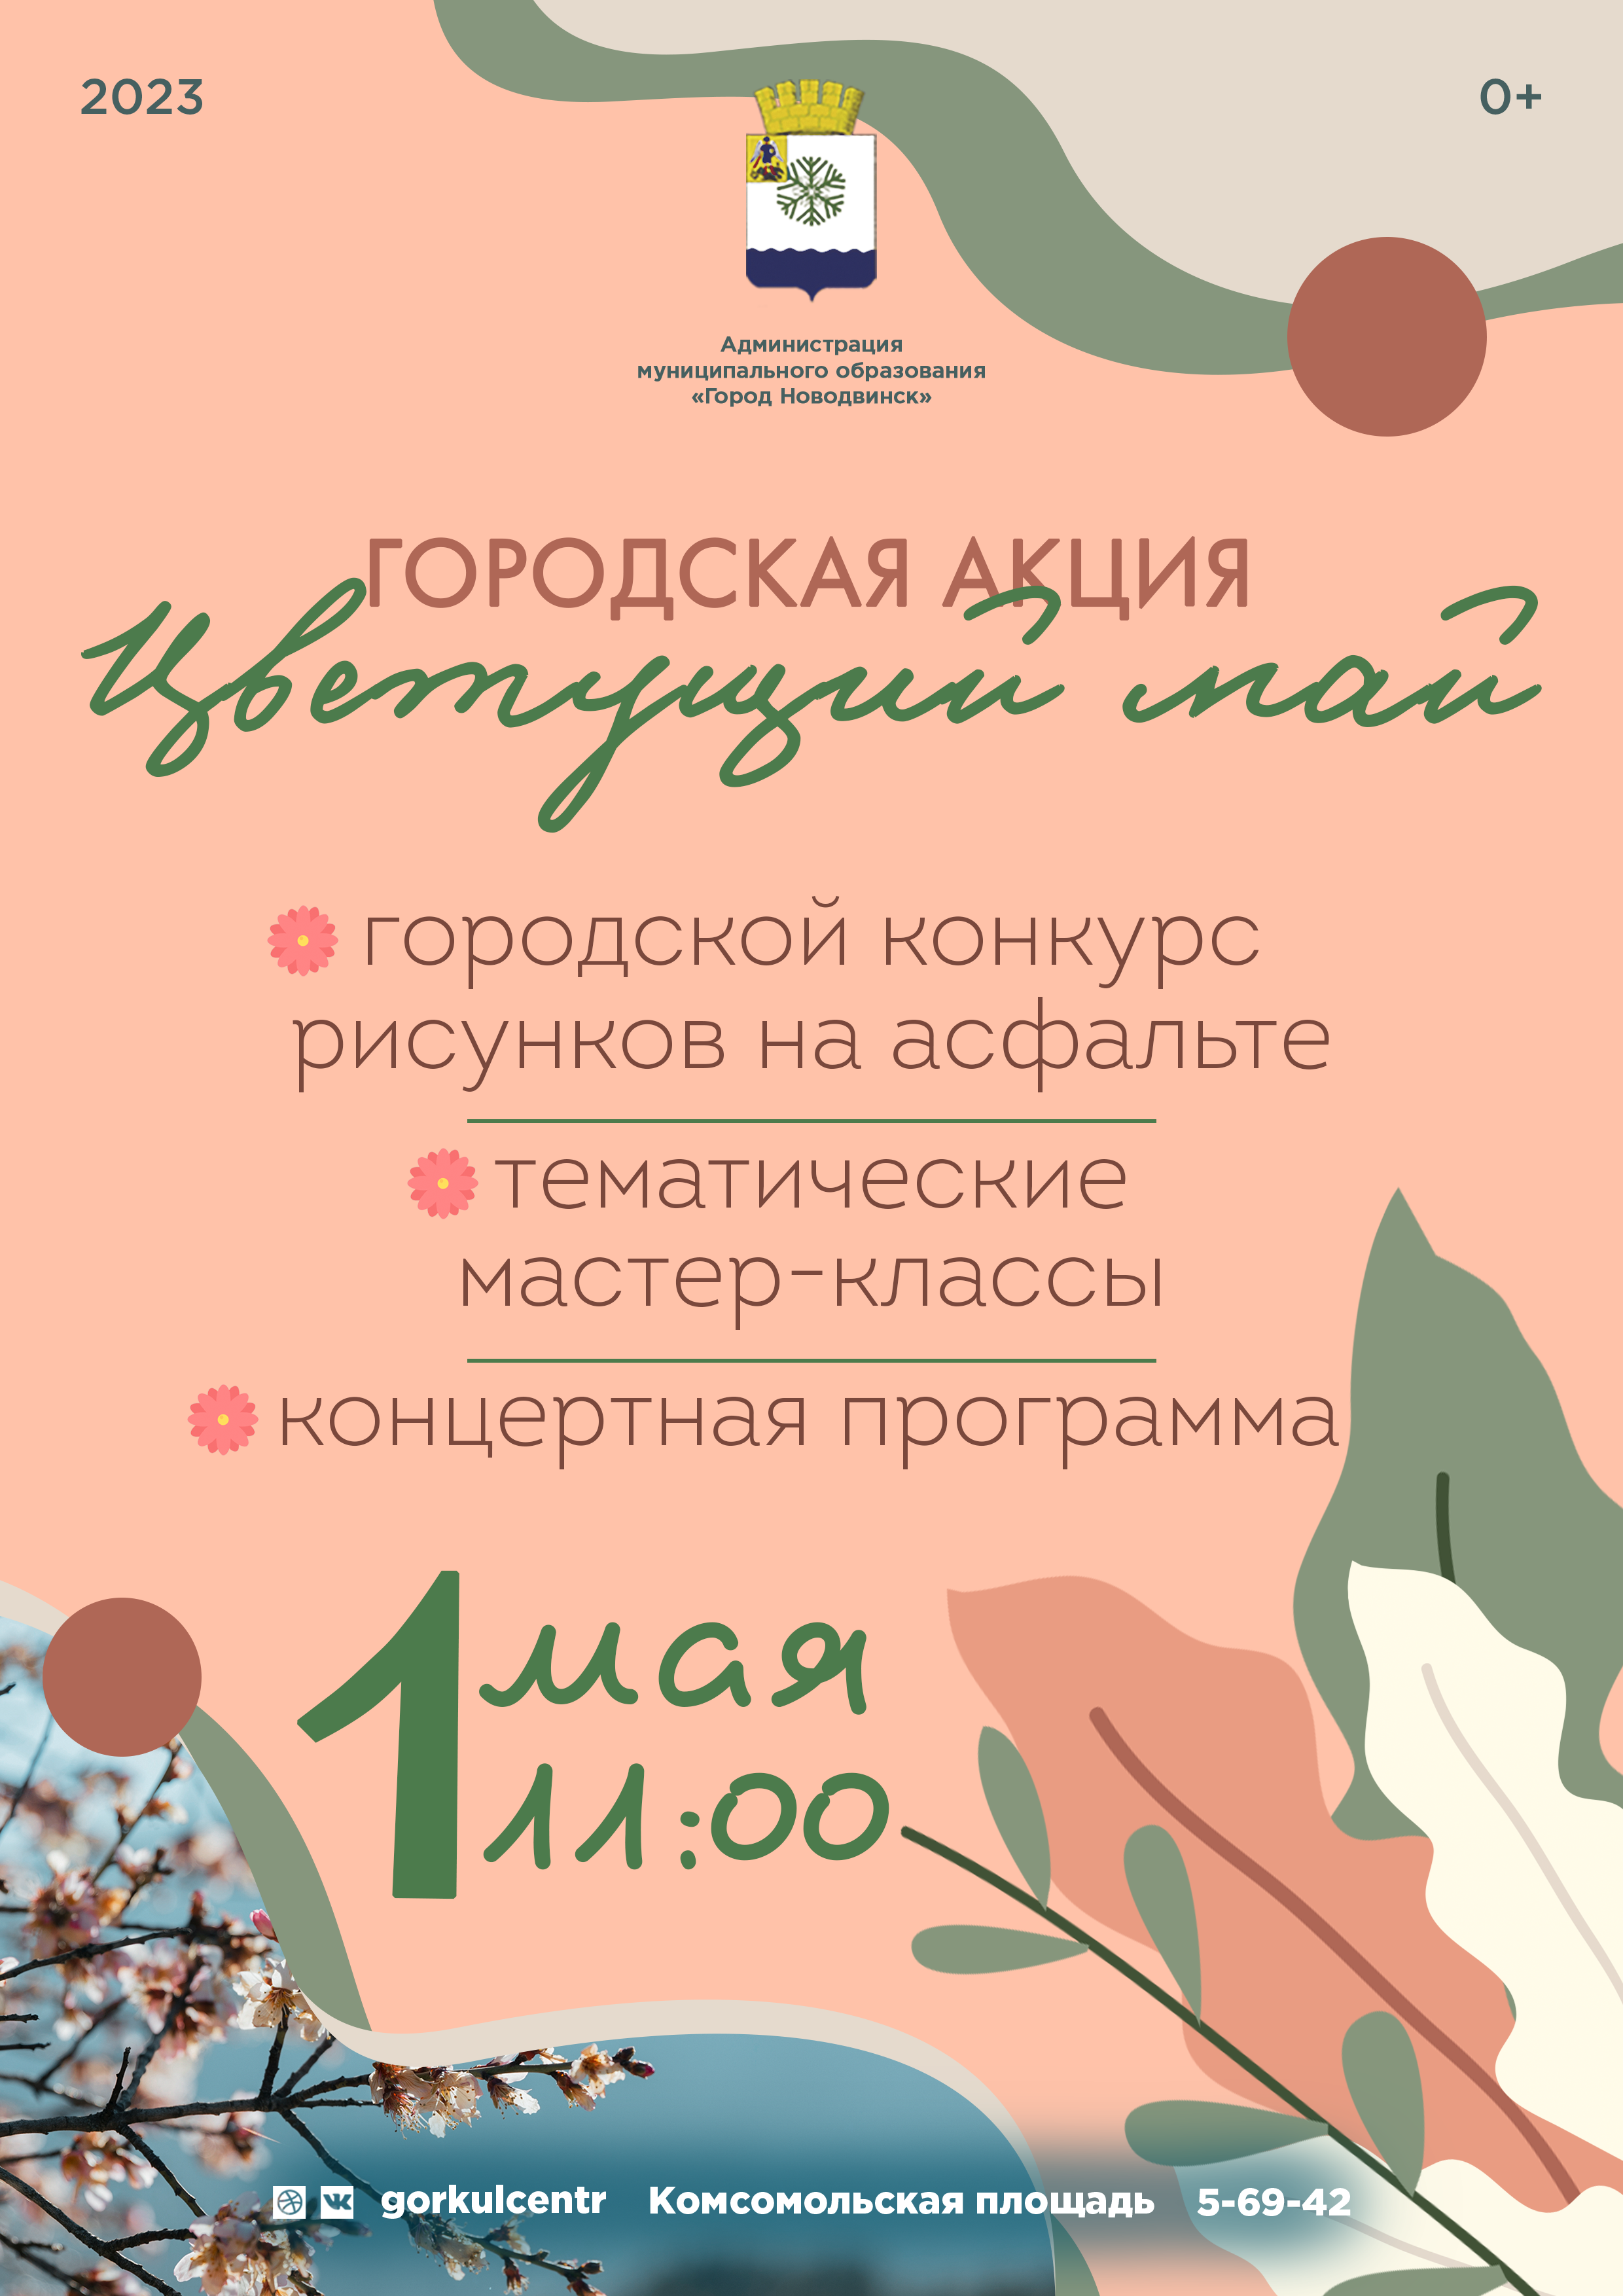 Новодвинский городской культурный центр приглашает к участию в открытом городском конкурсе рисунков на асфальте «Мы рисуем Победу»!